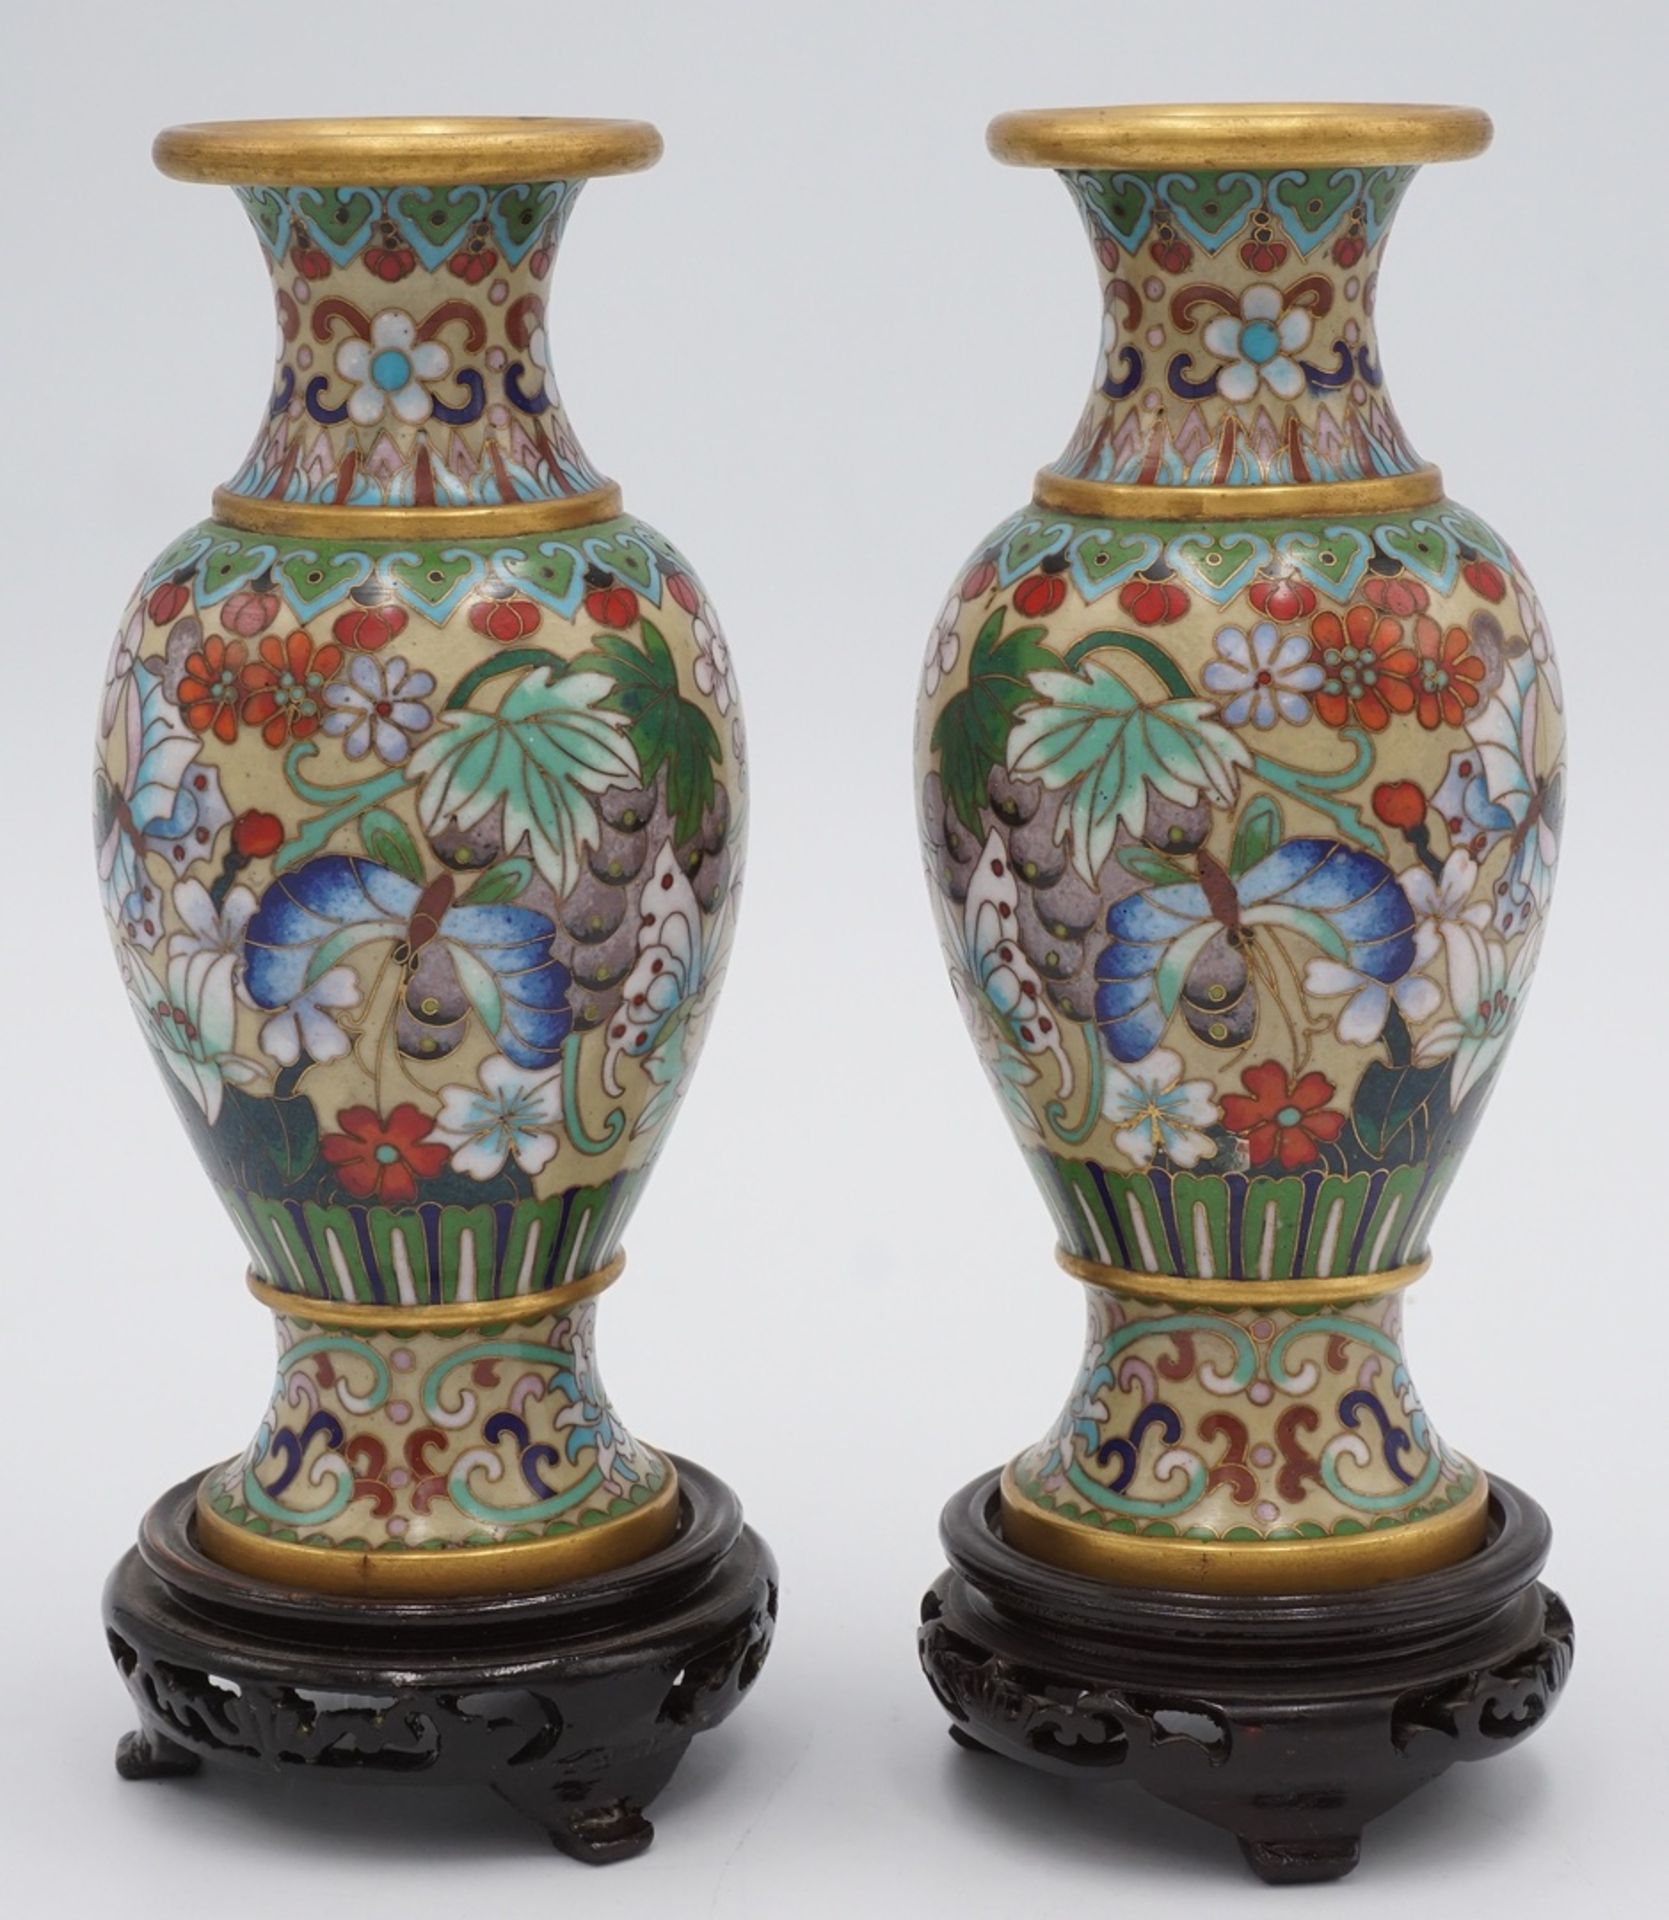 Zwei aufwendig verzierte Cloisonné Vasen, China, 1. Hälfte 20. Jh.Messing mit Emailledekor, mit